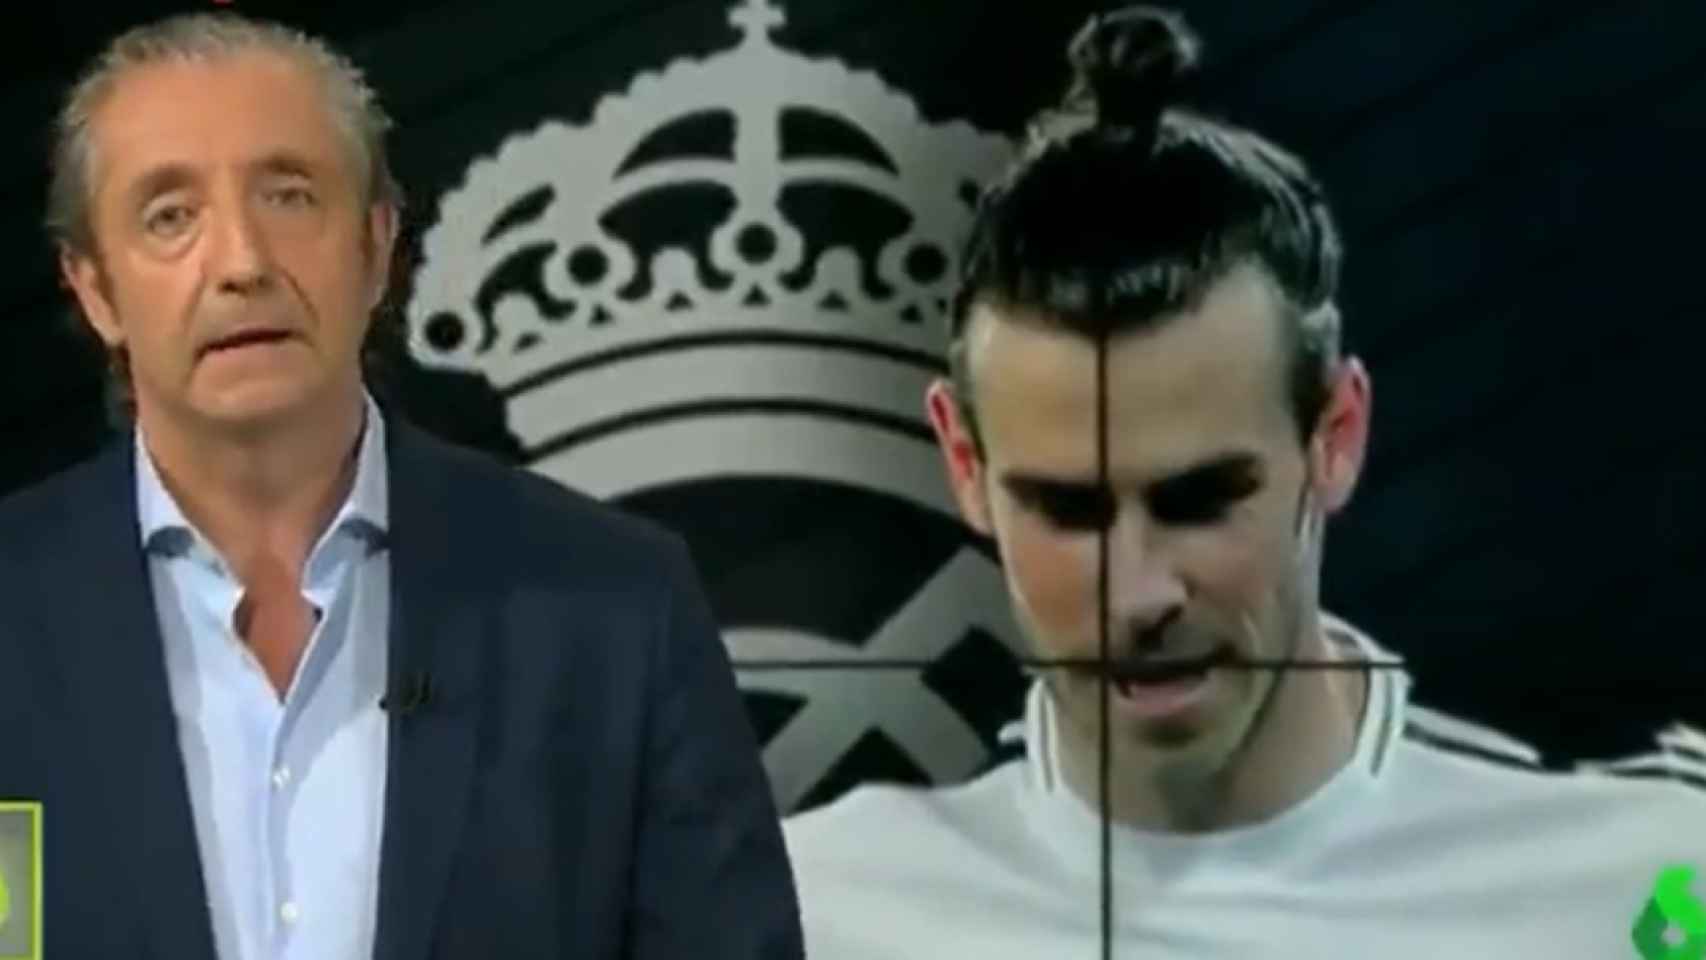 Josep Pedrerol, durante el Editorial sobre Gareth Bale